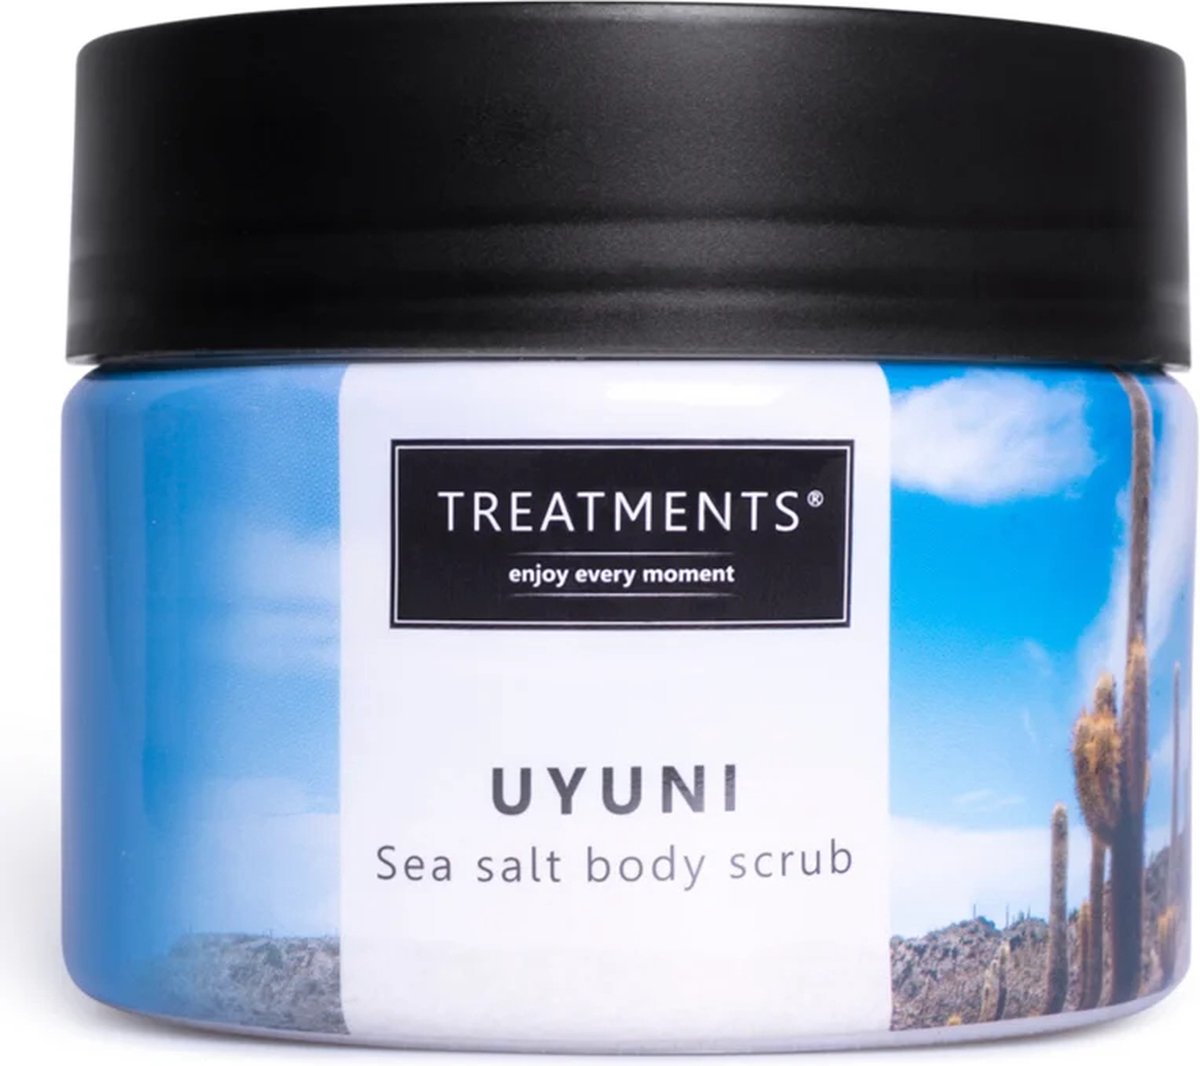 Treatments Uyuni seasalt body scrub